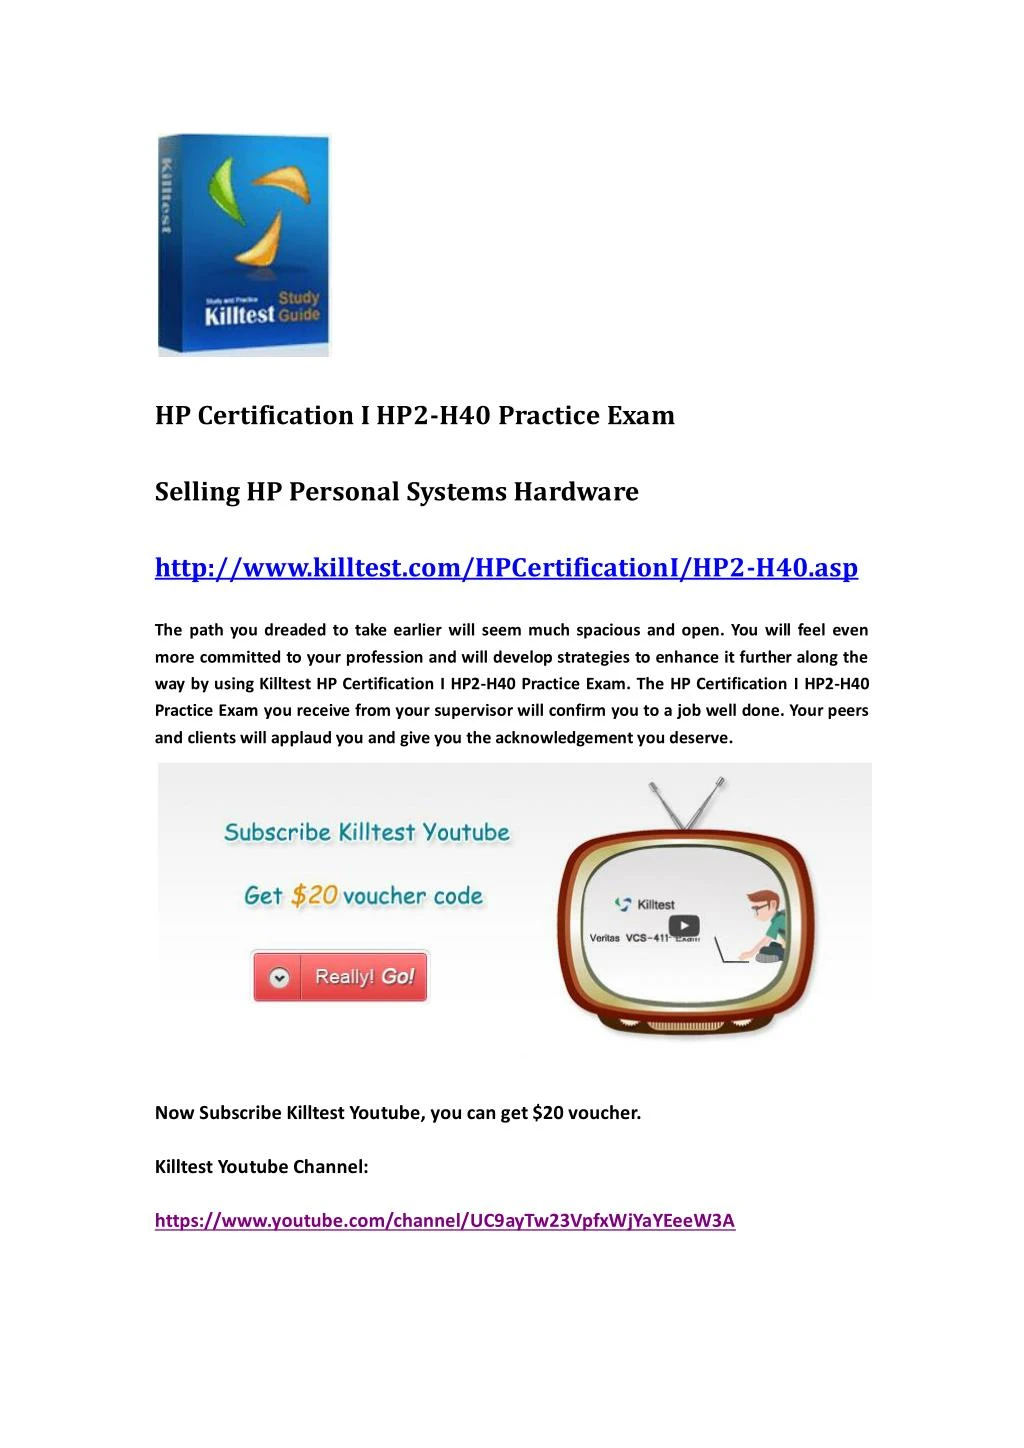 HPE3-U01 Prüfungsfragen